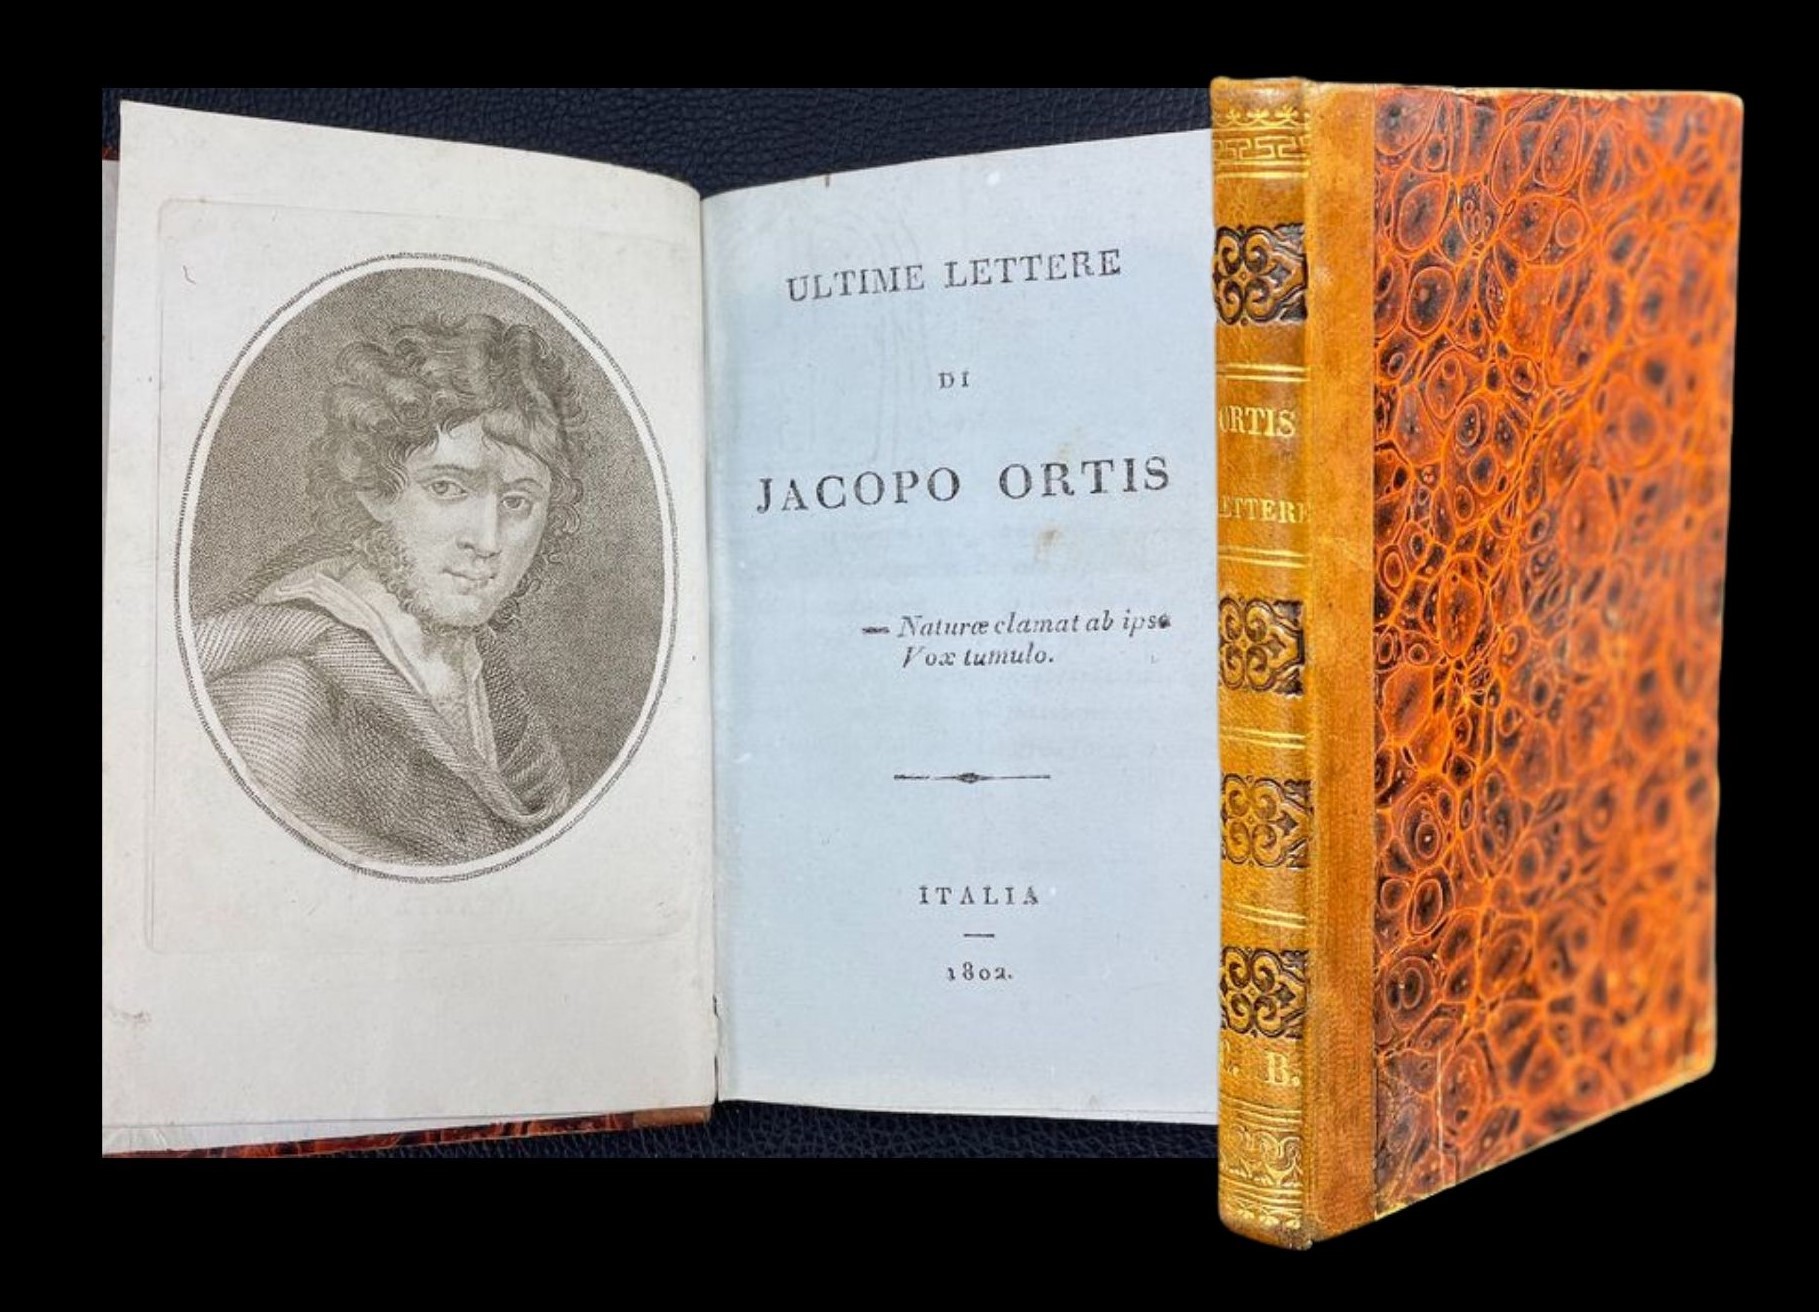 Meravigliosa edizione pirata delle “Ultime lettere di Jacopo Ortis” di Ugo Foscolo (1802) in asta